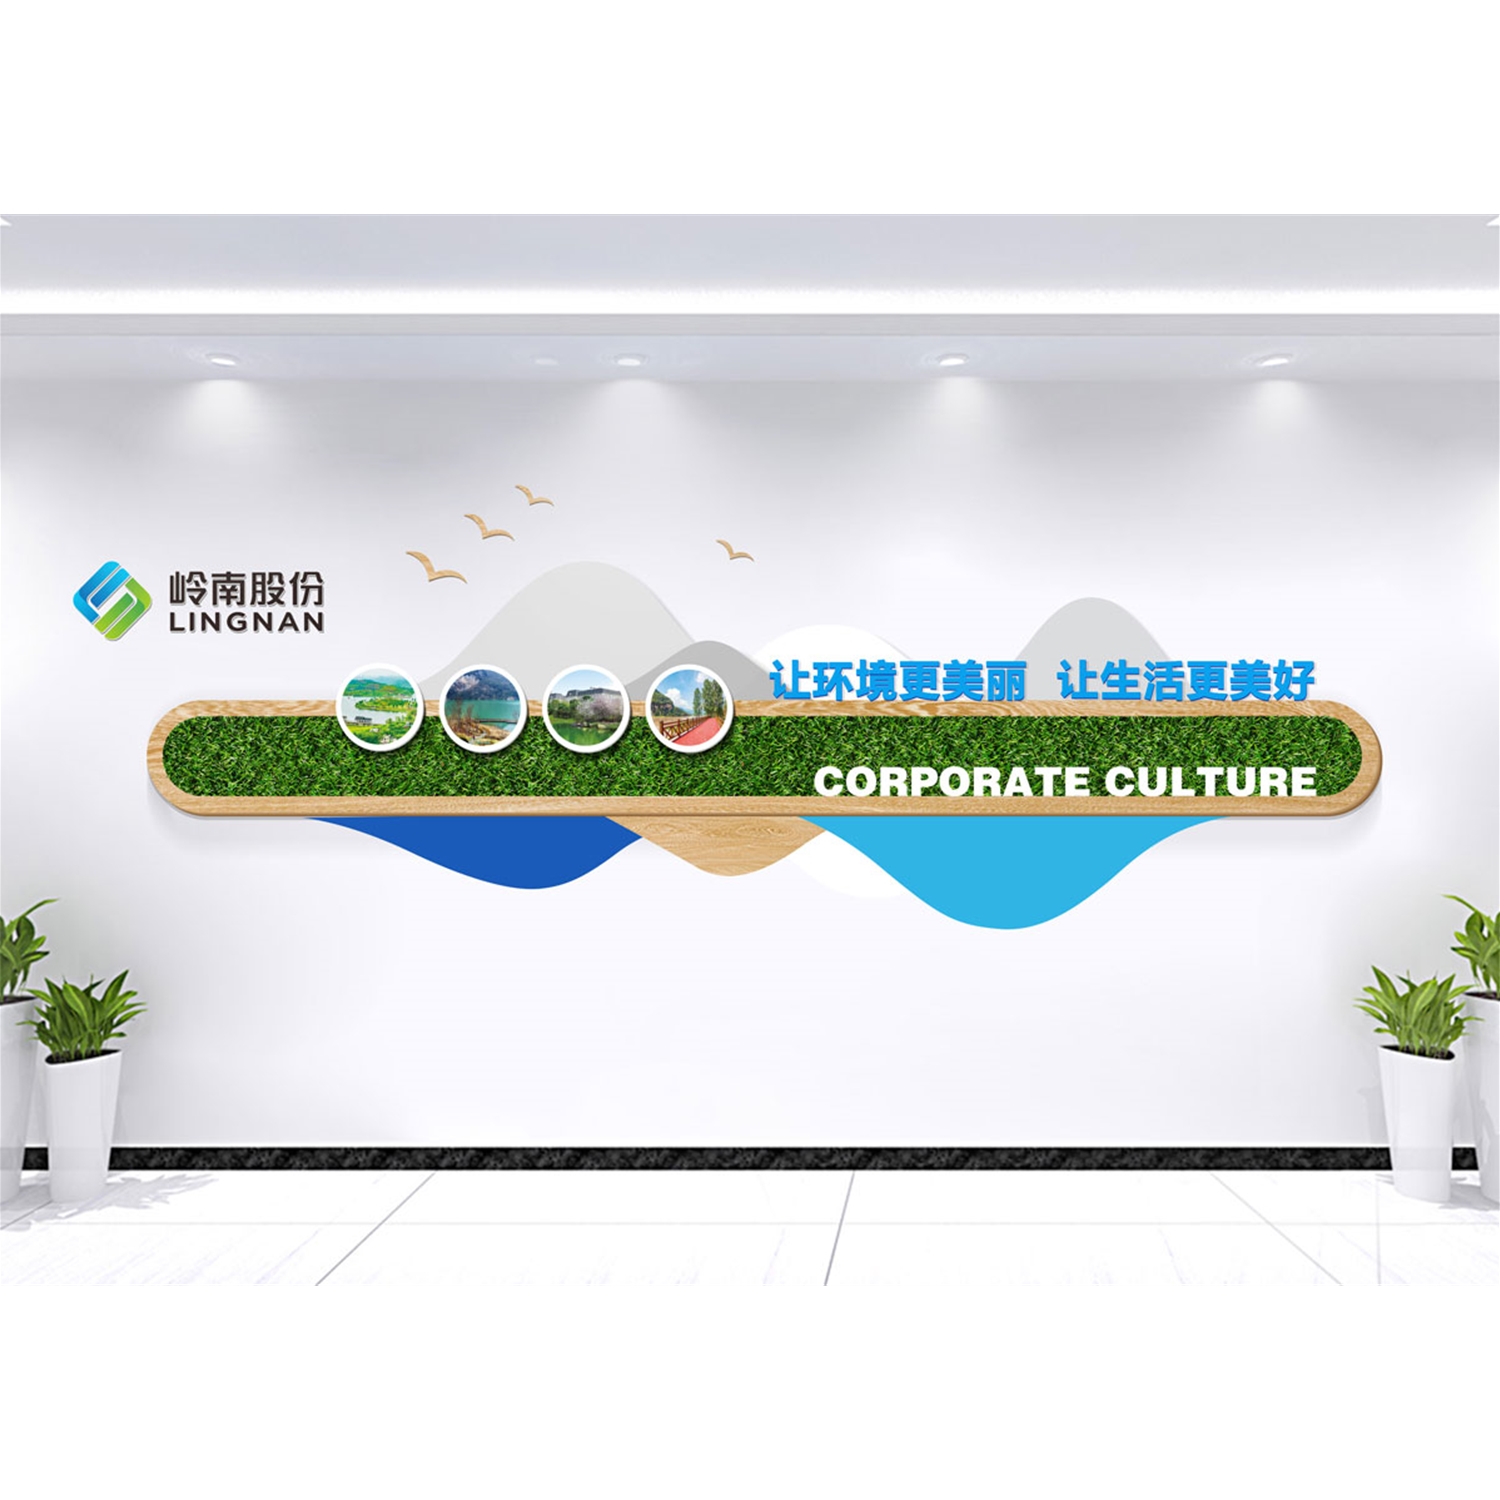 岭南生态文旅股份有限公司-企业文化墙设计制作案例